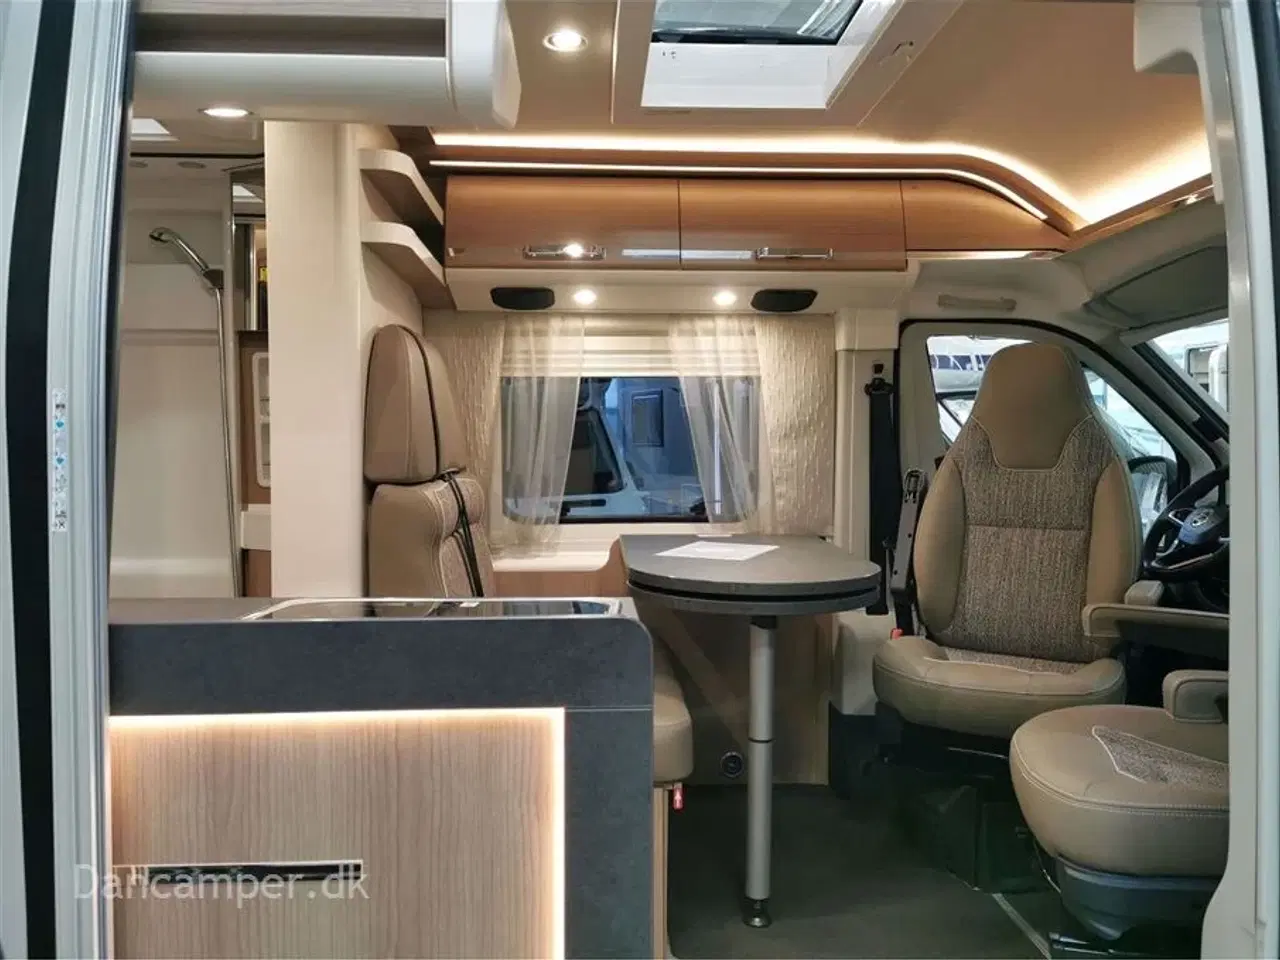 Billede 9 - 2022 - Carthago can Charming 600 DB   Luksus rejsevogn på under 6 meter, Træk til 3000Kg, 140Hk, 9 trins automatgear og masser af udstyr